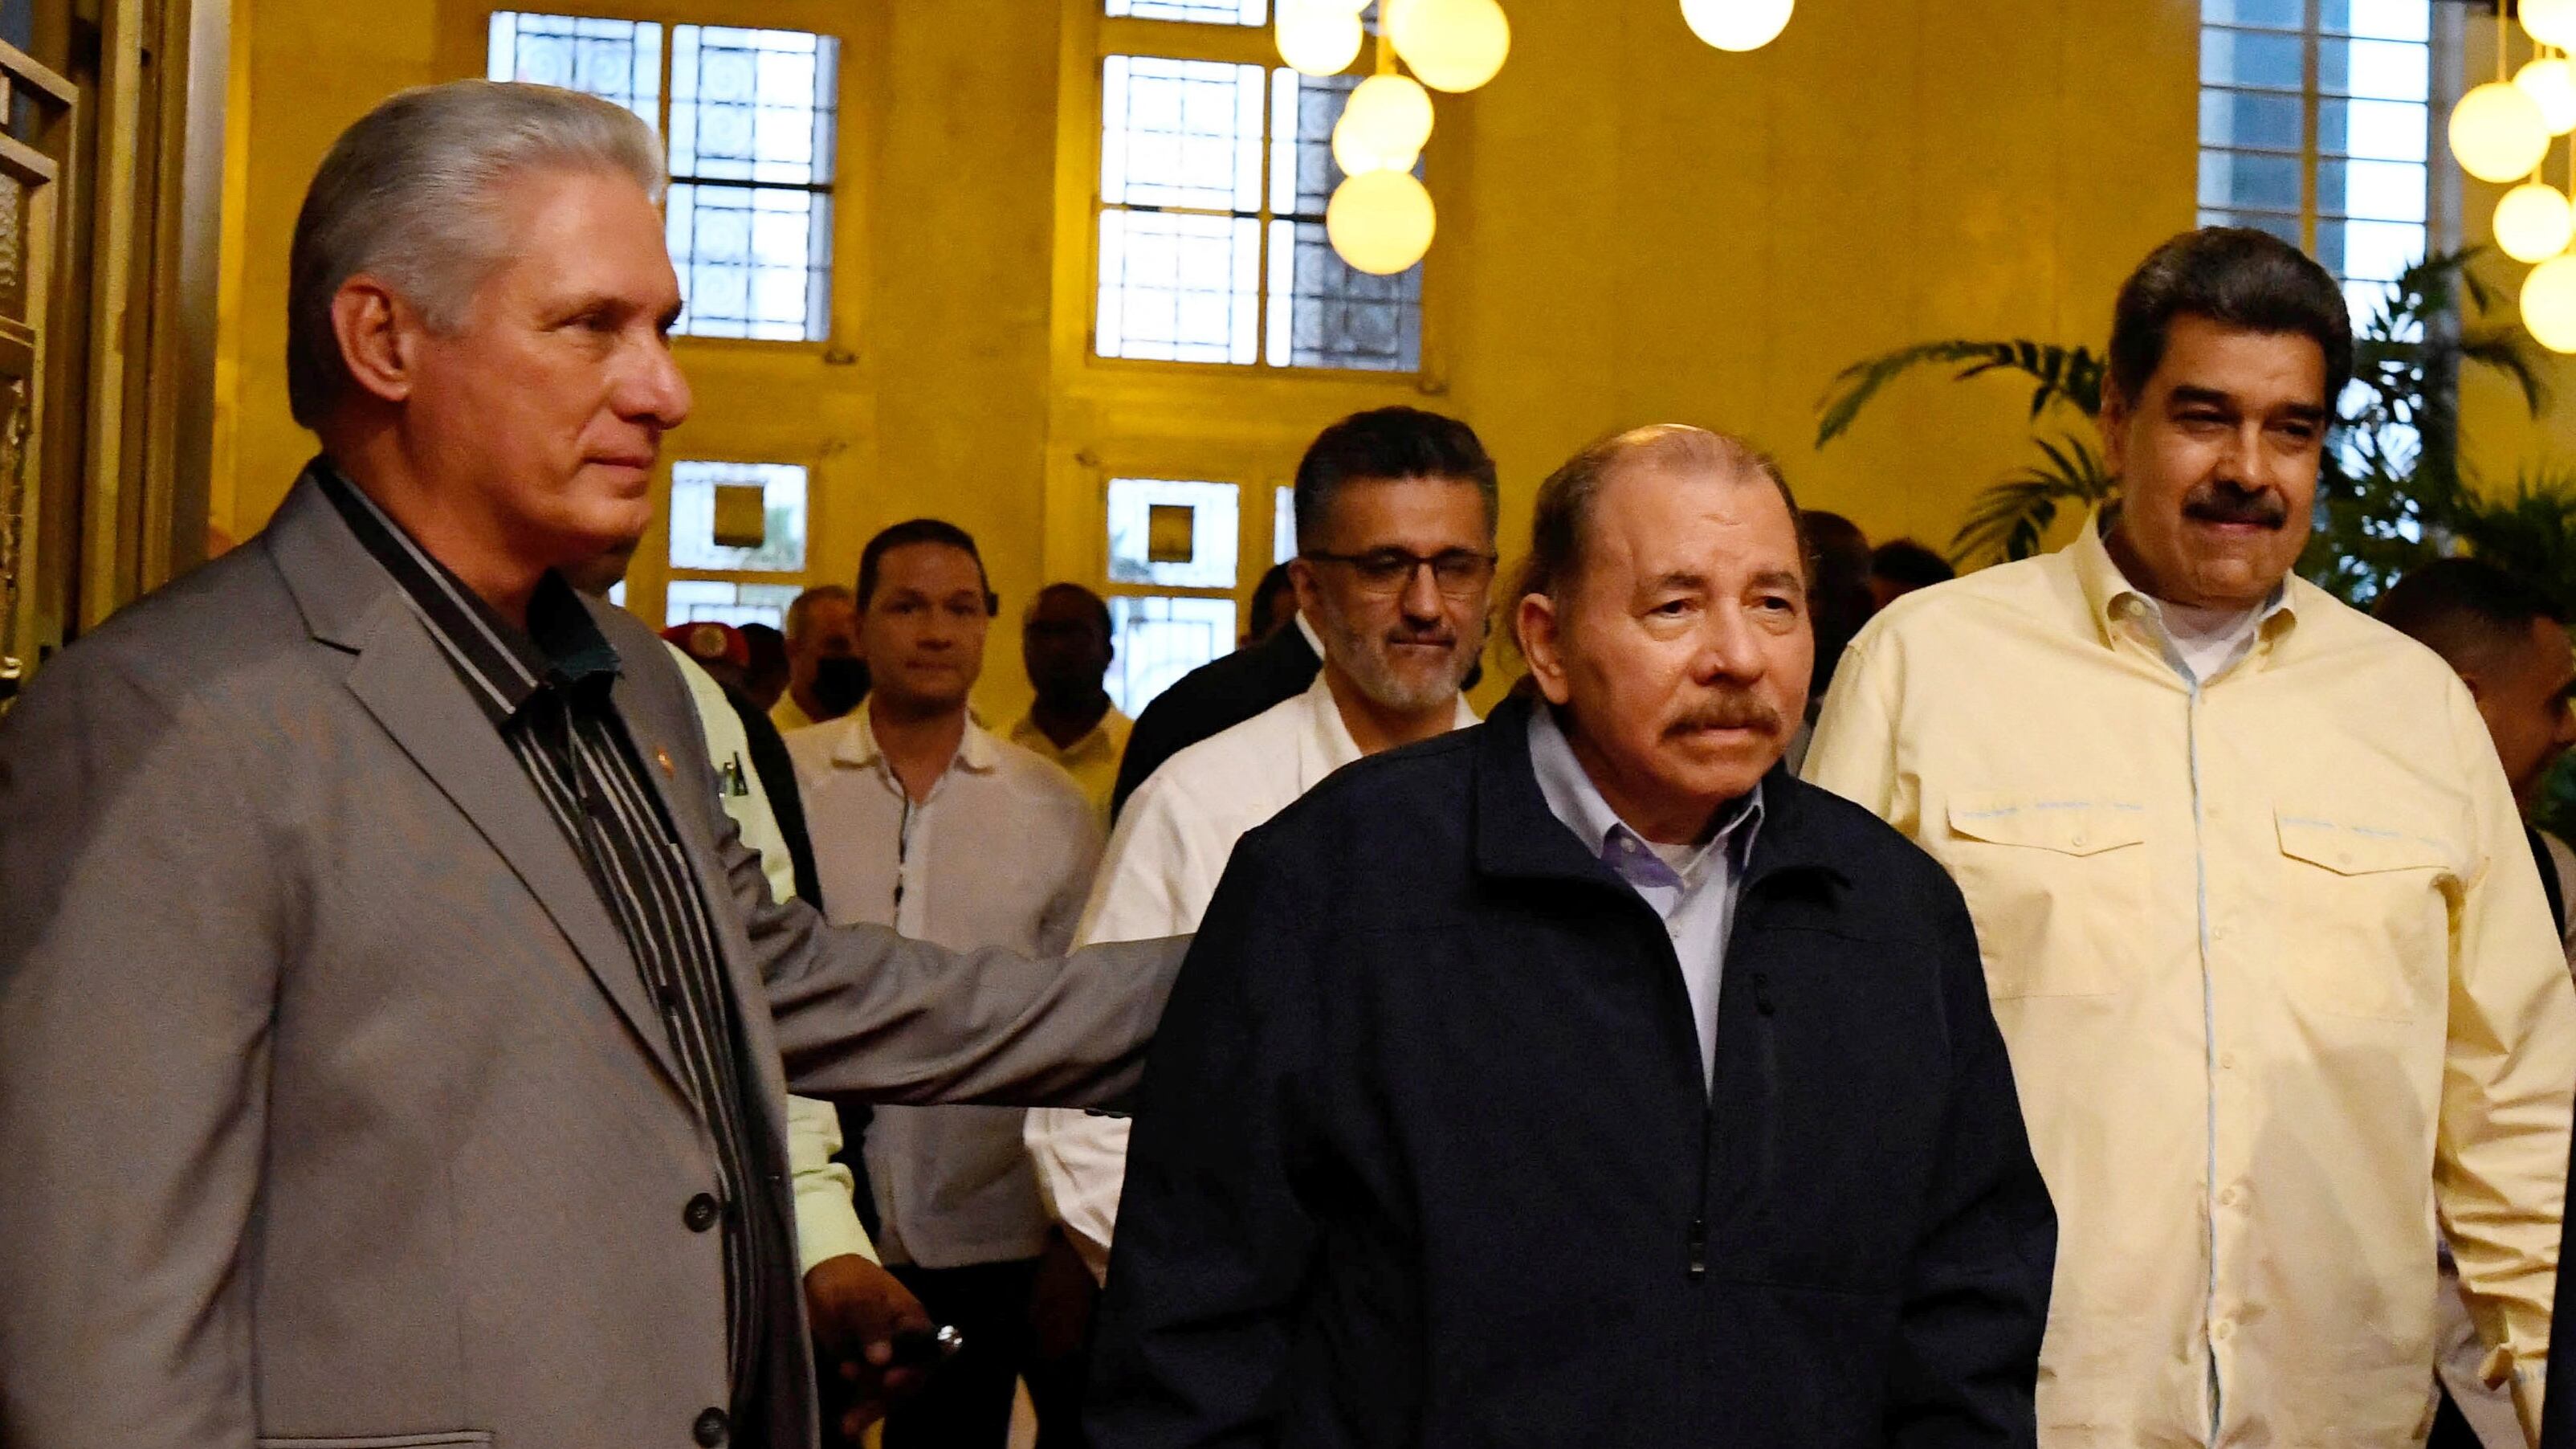 Miguel Díaz-Canel, Daniel Ortega y Nicolás Maduro, dictadores de Cuba, Nicaragua y Venezuela, respectivamente (REUTERS/Norlys Perez)